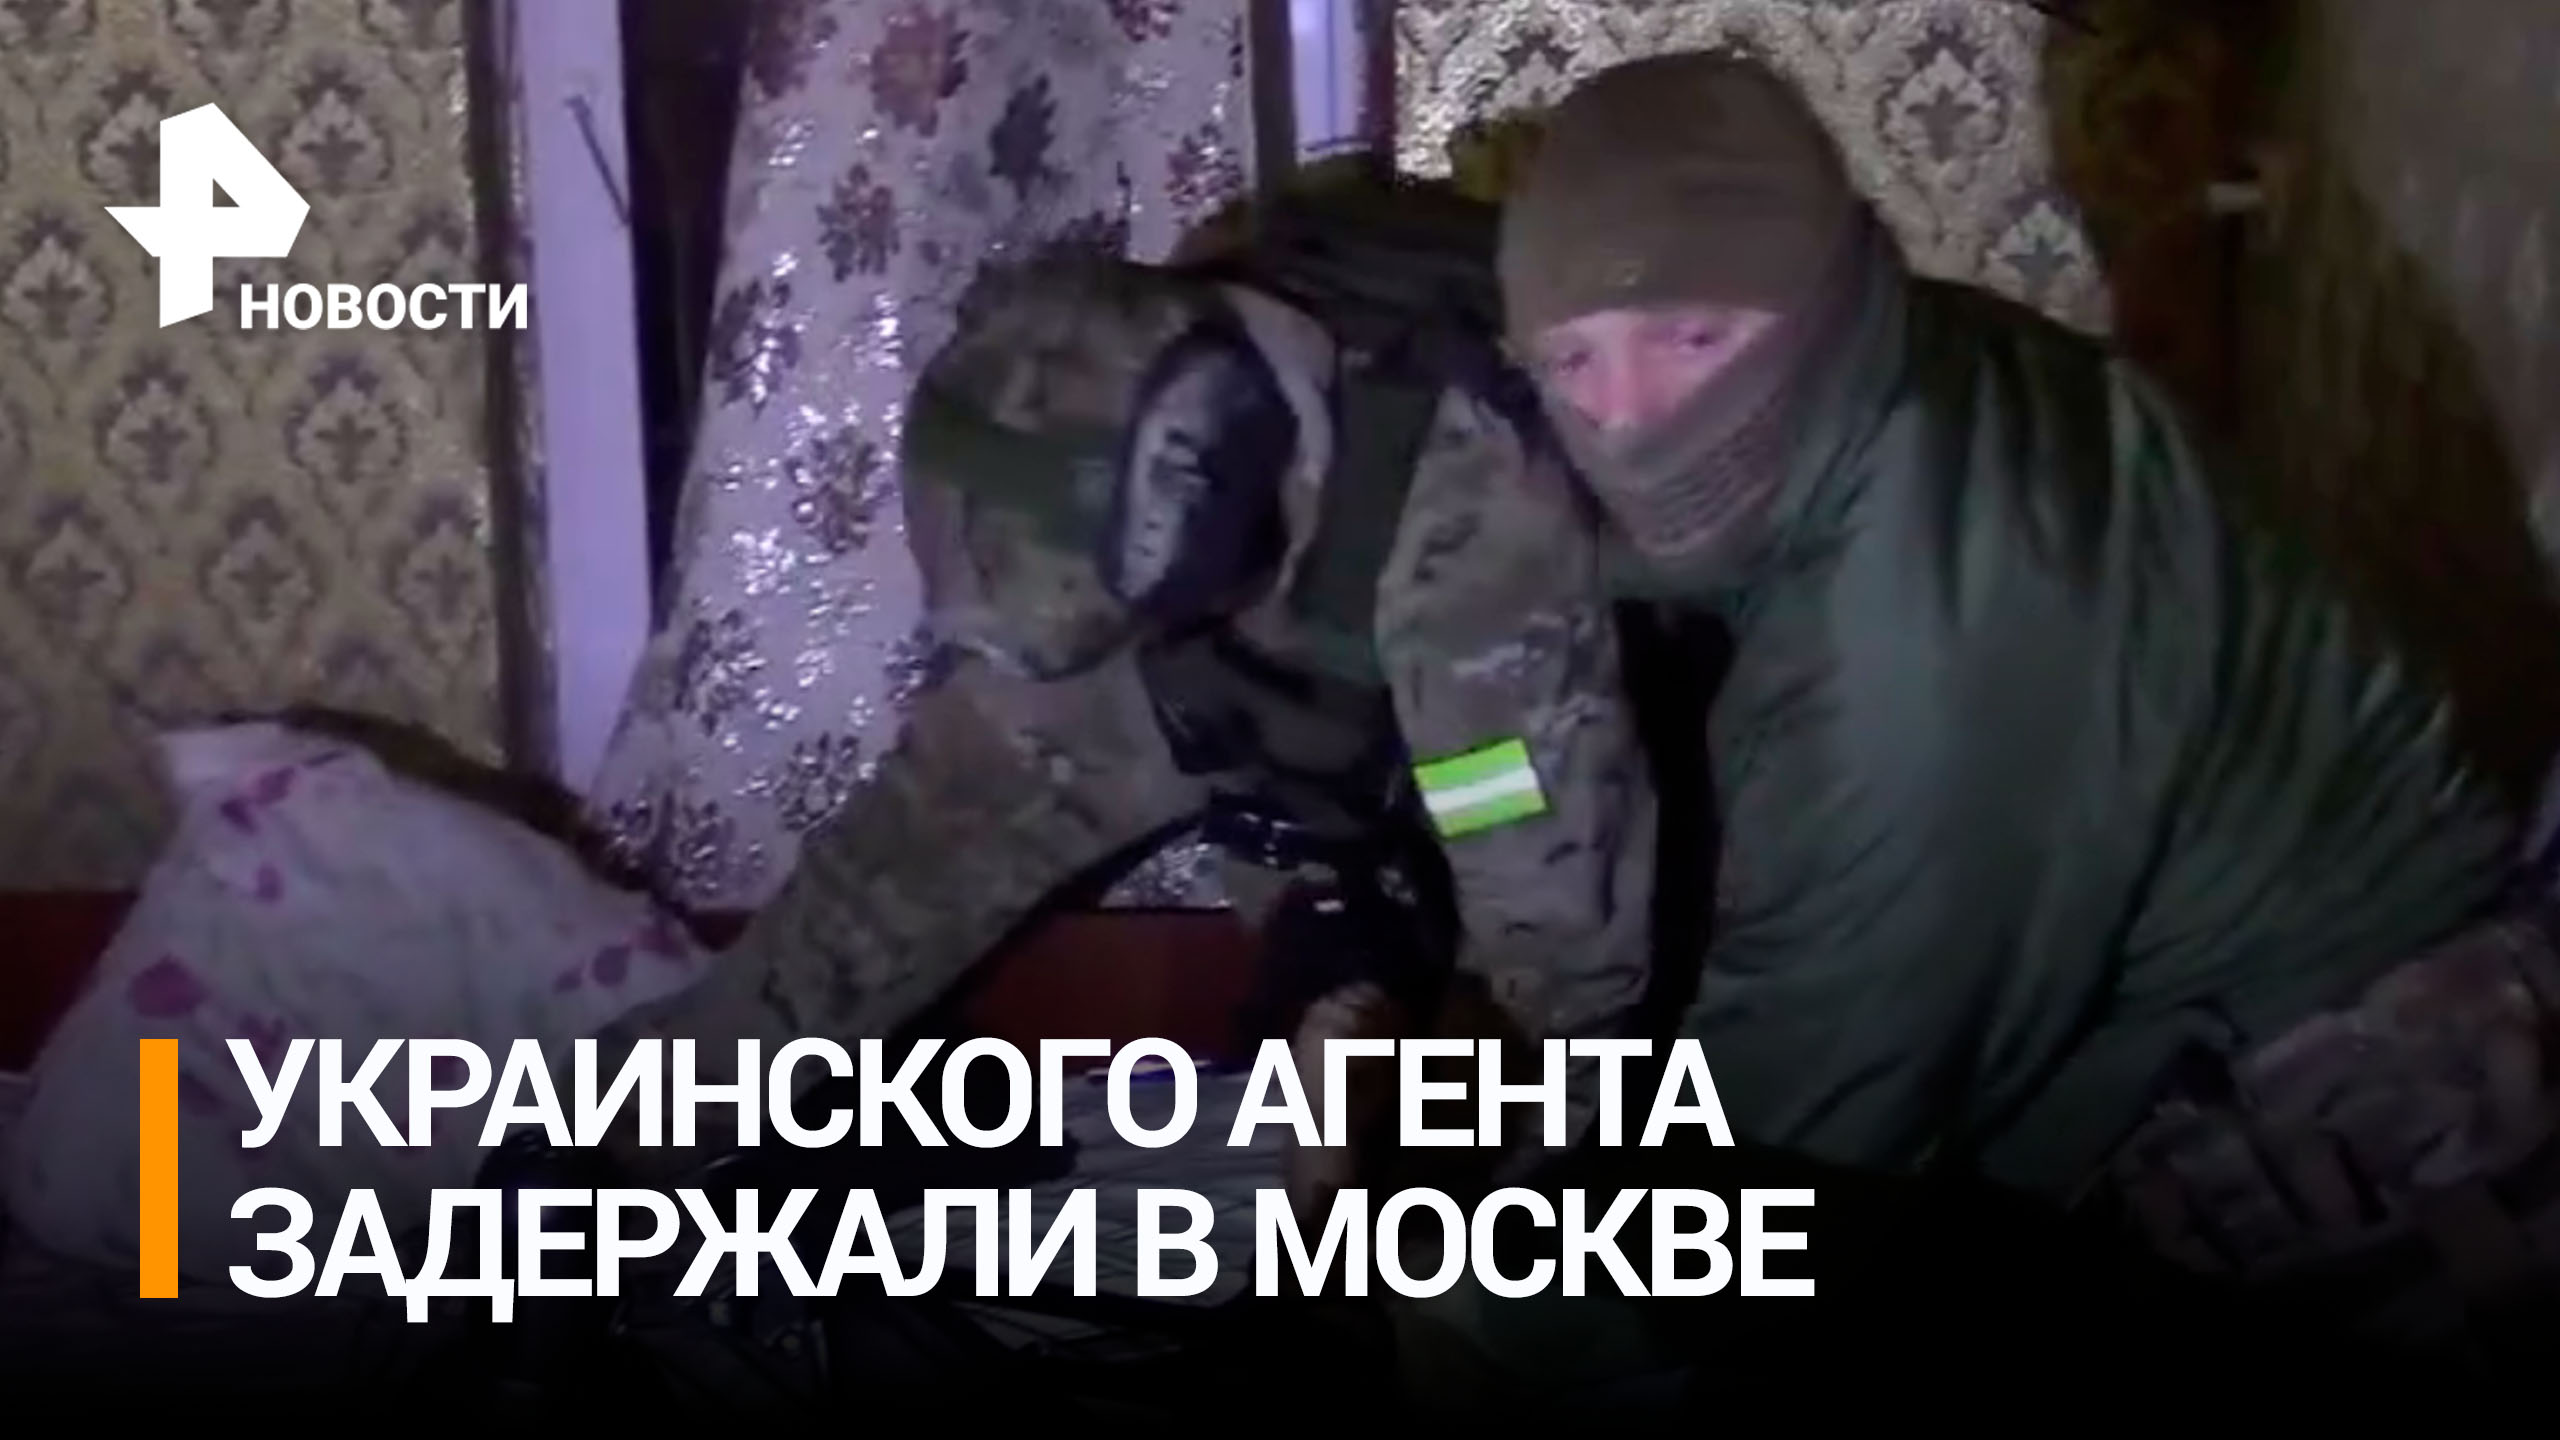 Кадры задержания украинского агента в Москве - запускал БПЛА у военных объектов, чтобы помешать ПВО